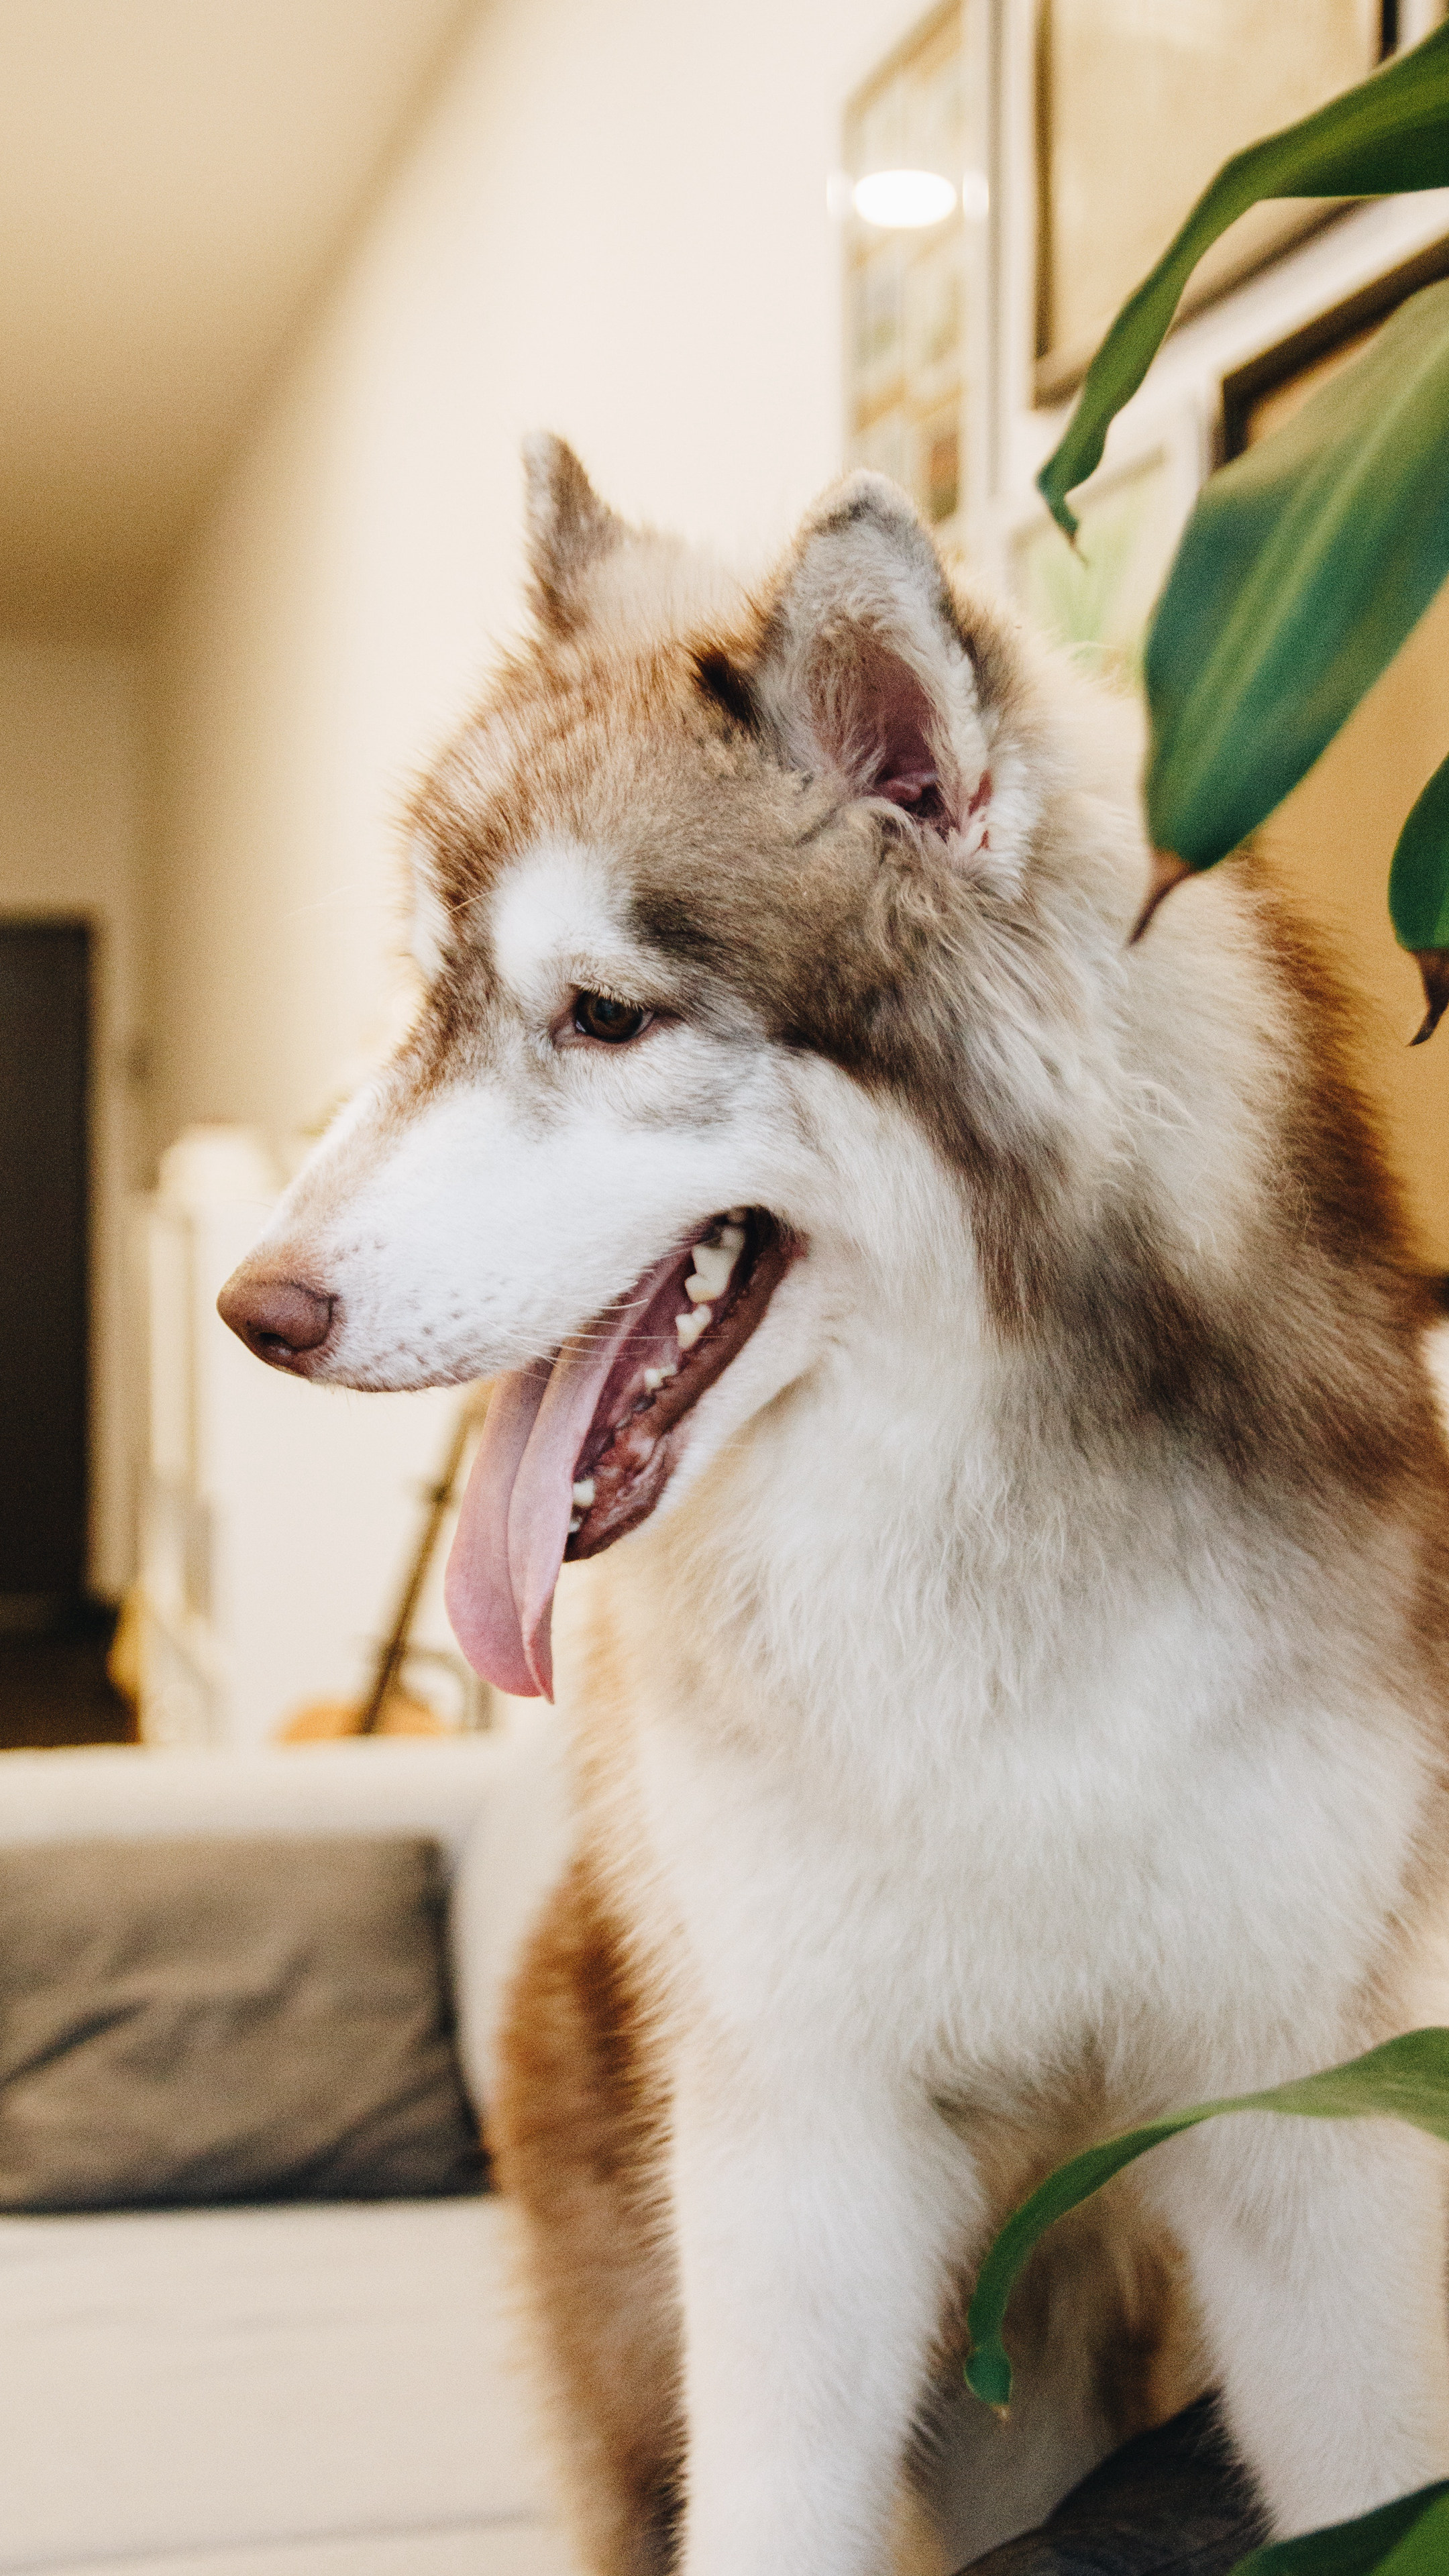 坐在客厅沙发吐着舌头的萌宠“阿拉斯加雪橇犬”高清手机壁纸